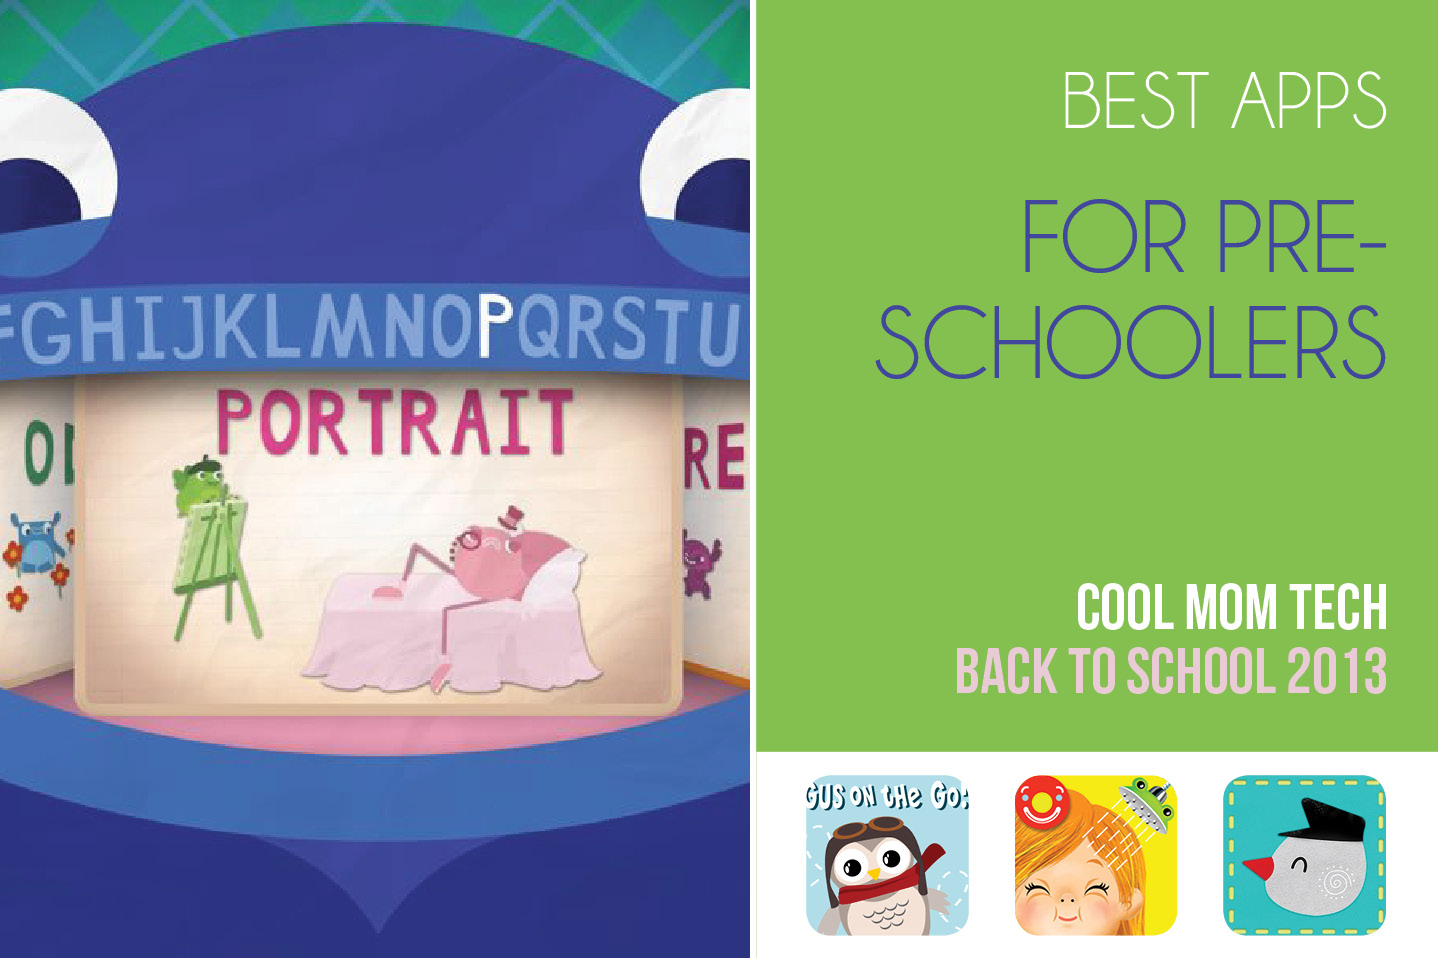 The best preschool apps: Back to School Tech Guide 2013